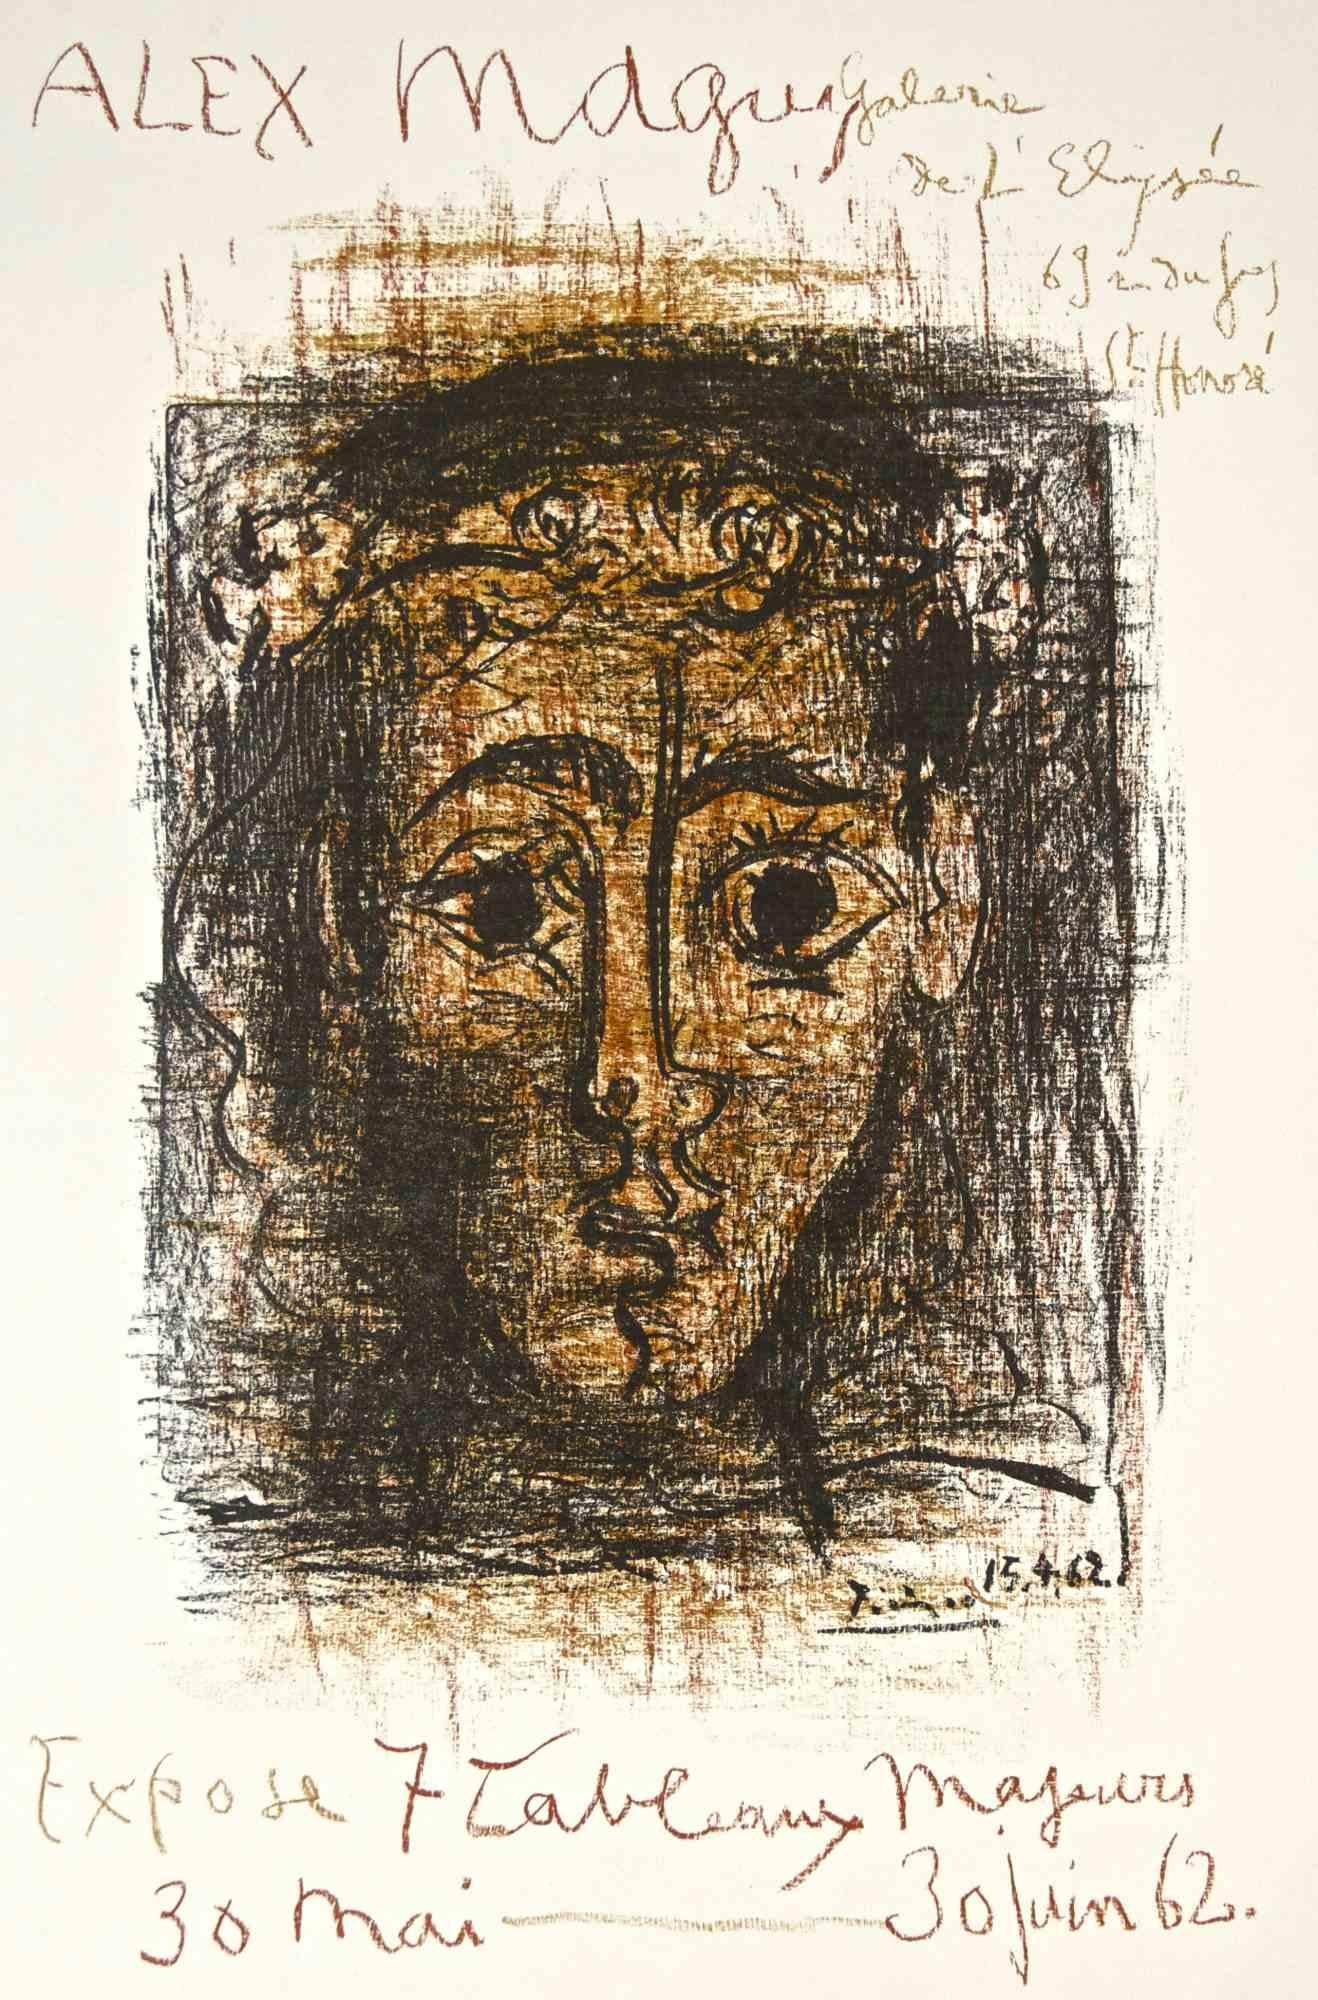 Plakat von Pablo Picasso für die Ausstellung von Alex Maguy in der Galerie de l'Elysée von Mai bis Juni 1962. In der Platte signiert und datiert.

Farblithographie, aus einer Auflage von 1.000 Exemplaren.

Bezug: Bloch 1298; Czwiklitzer 50; Rodrigo